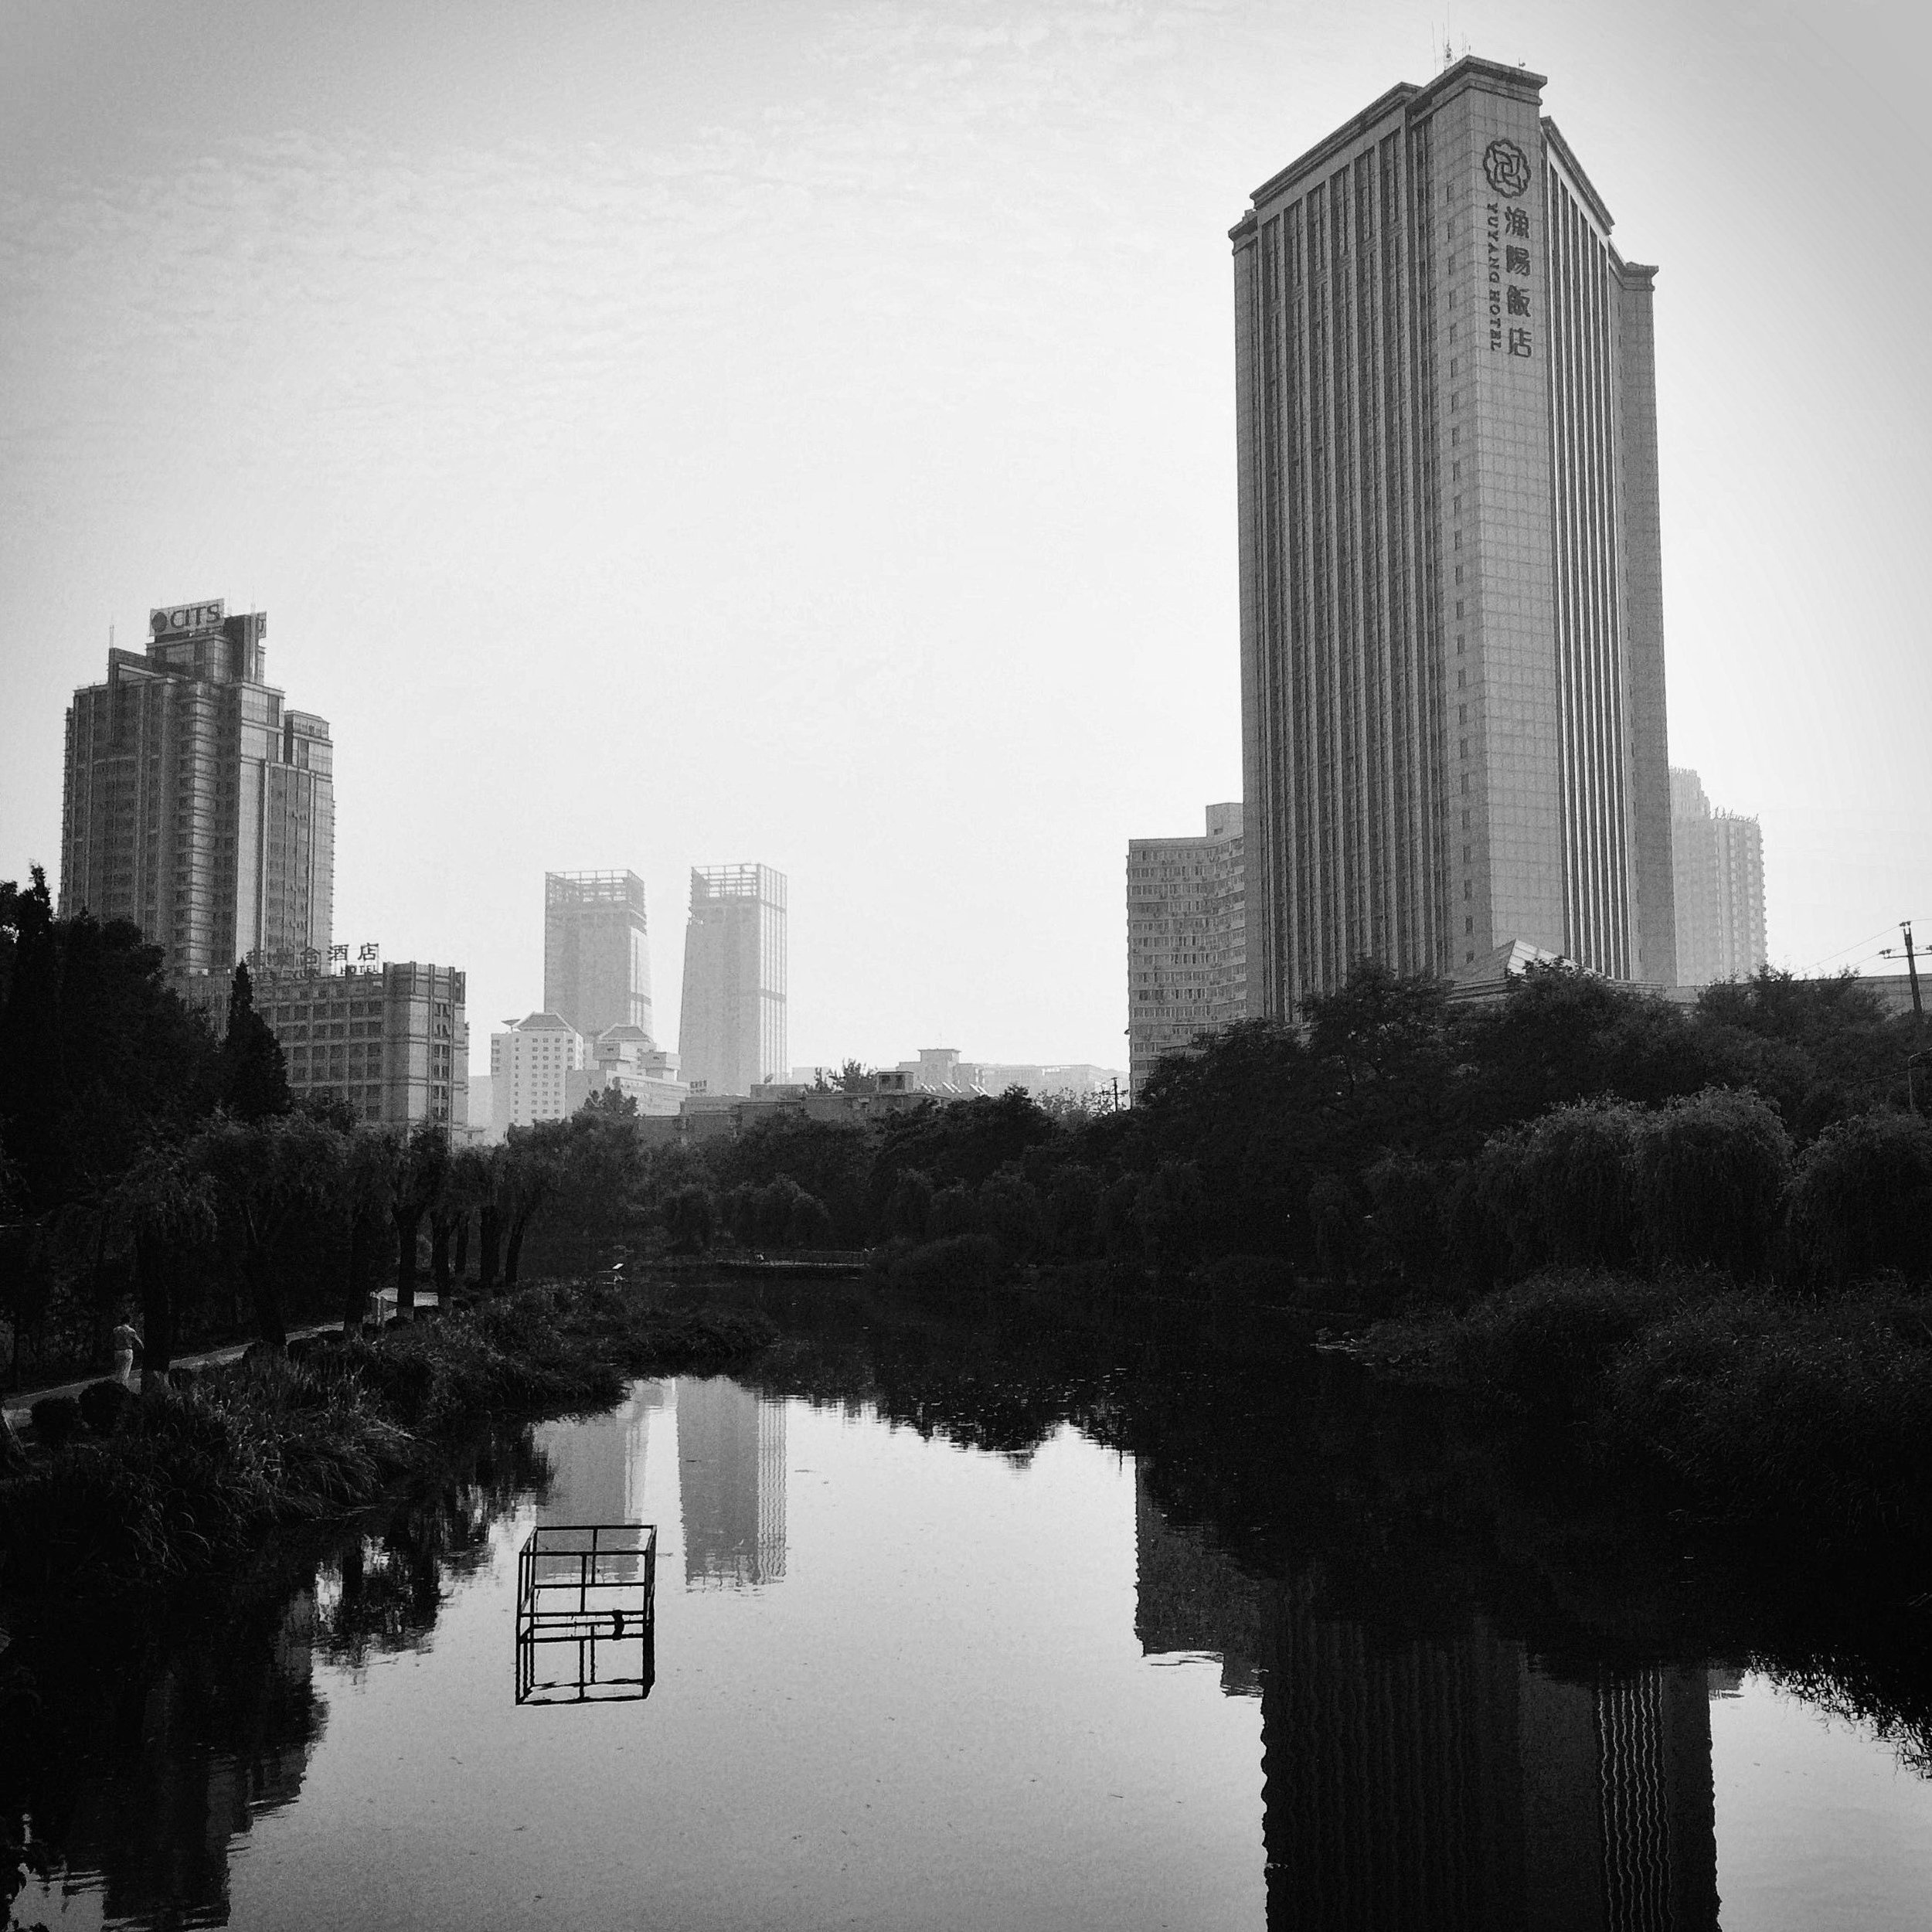 京髓 - 14 - Still (Beijing, 2015).JPG